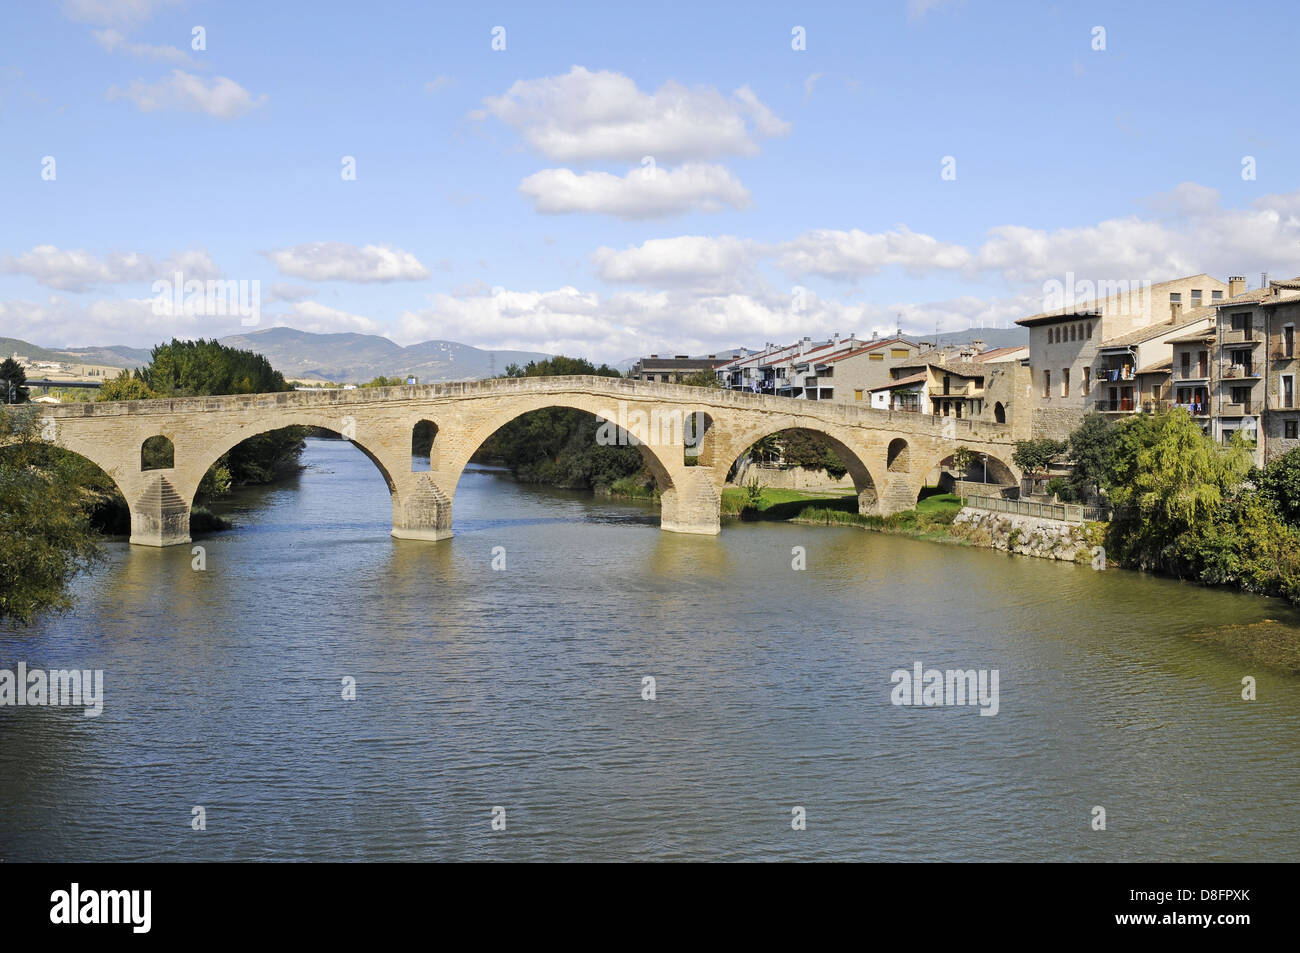 Puente Romanica Stock Photo